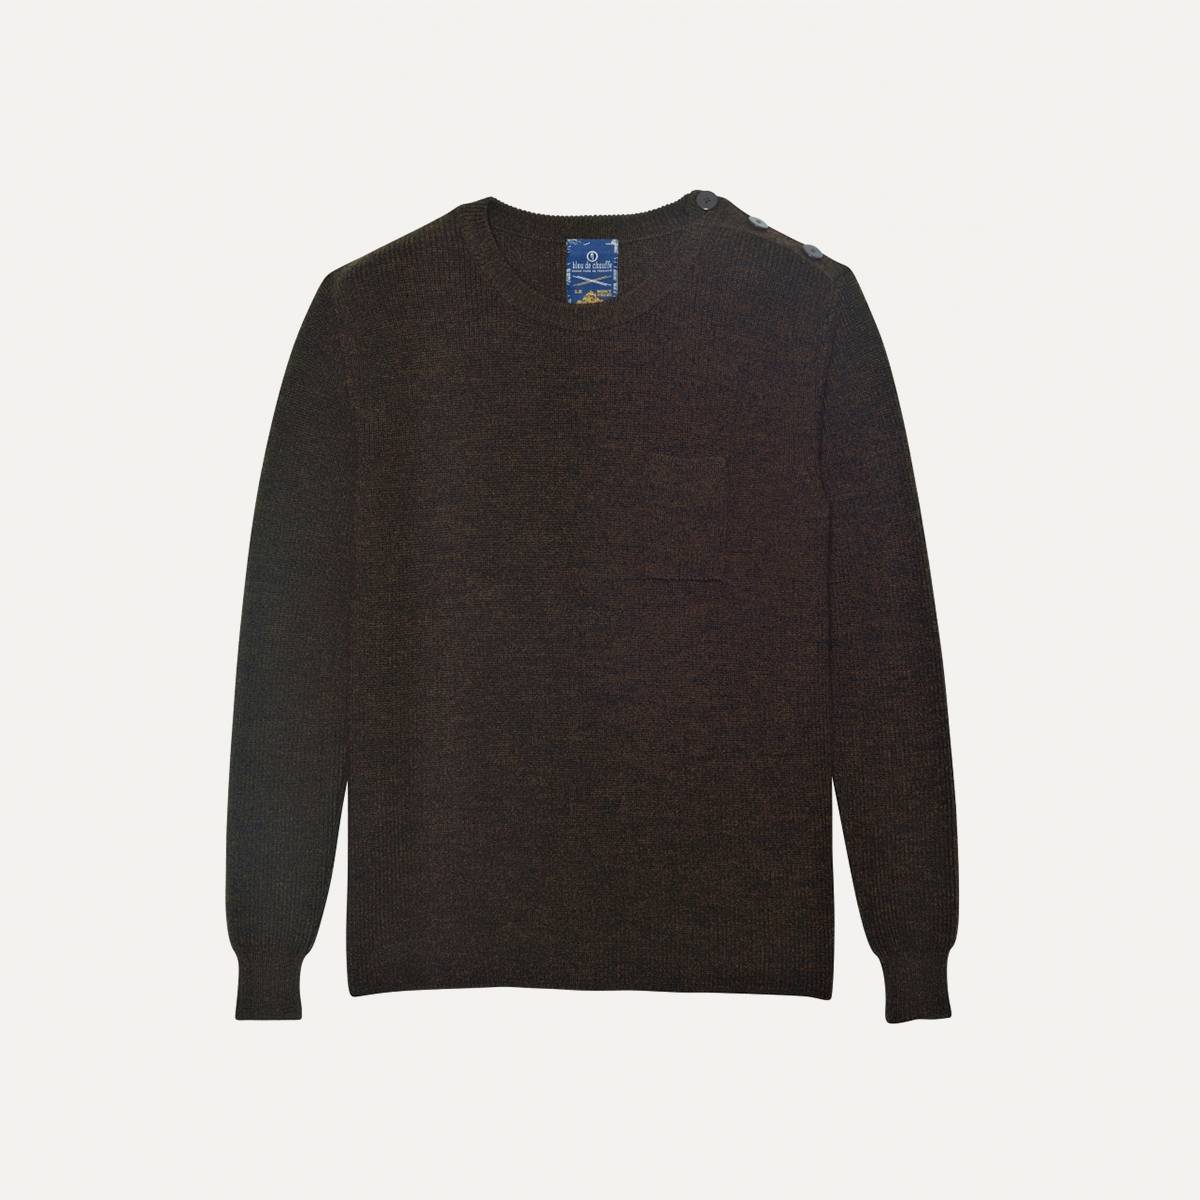  Jack Sweater in heather virgin wool - Brown (image n°1)